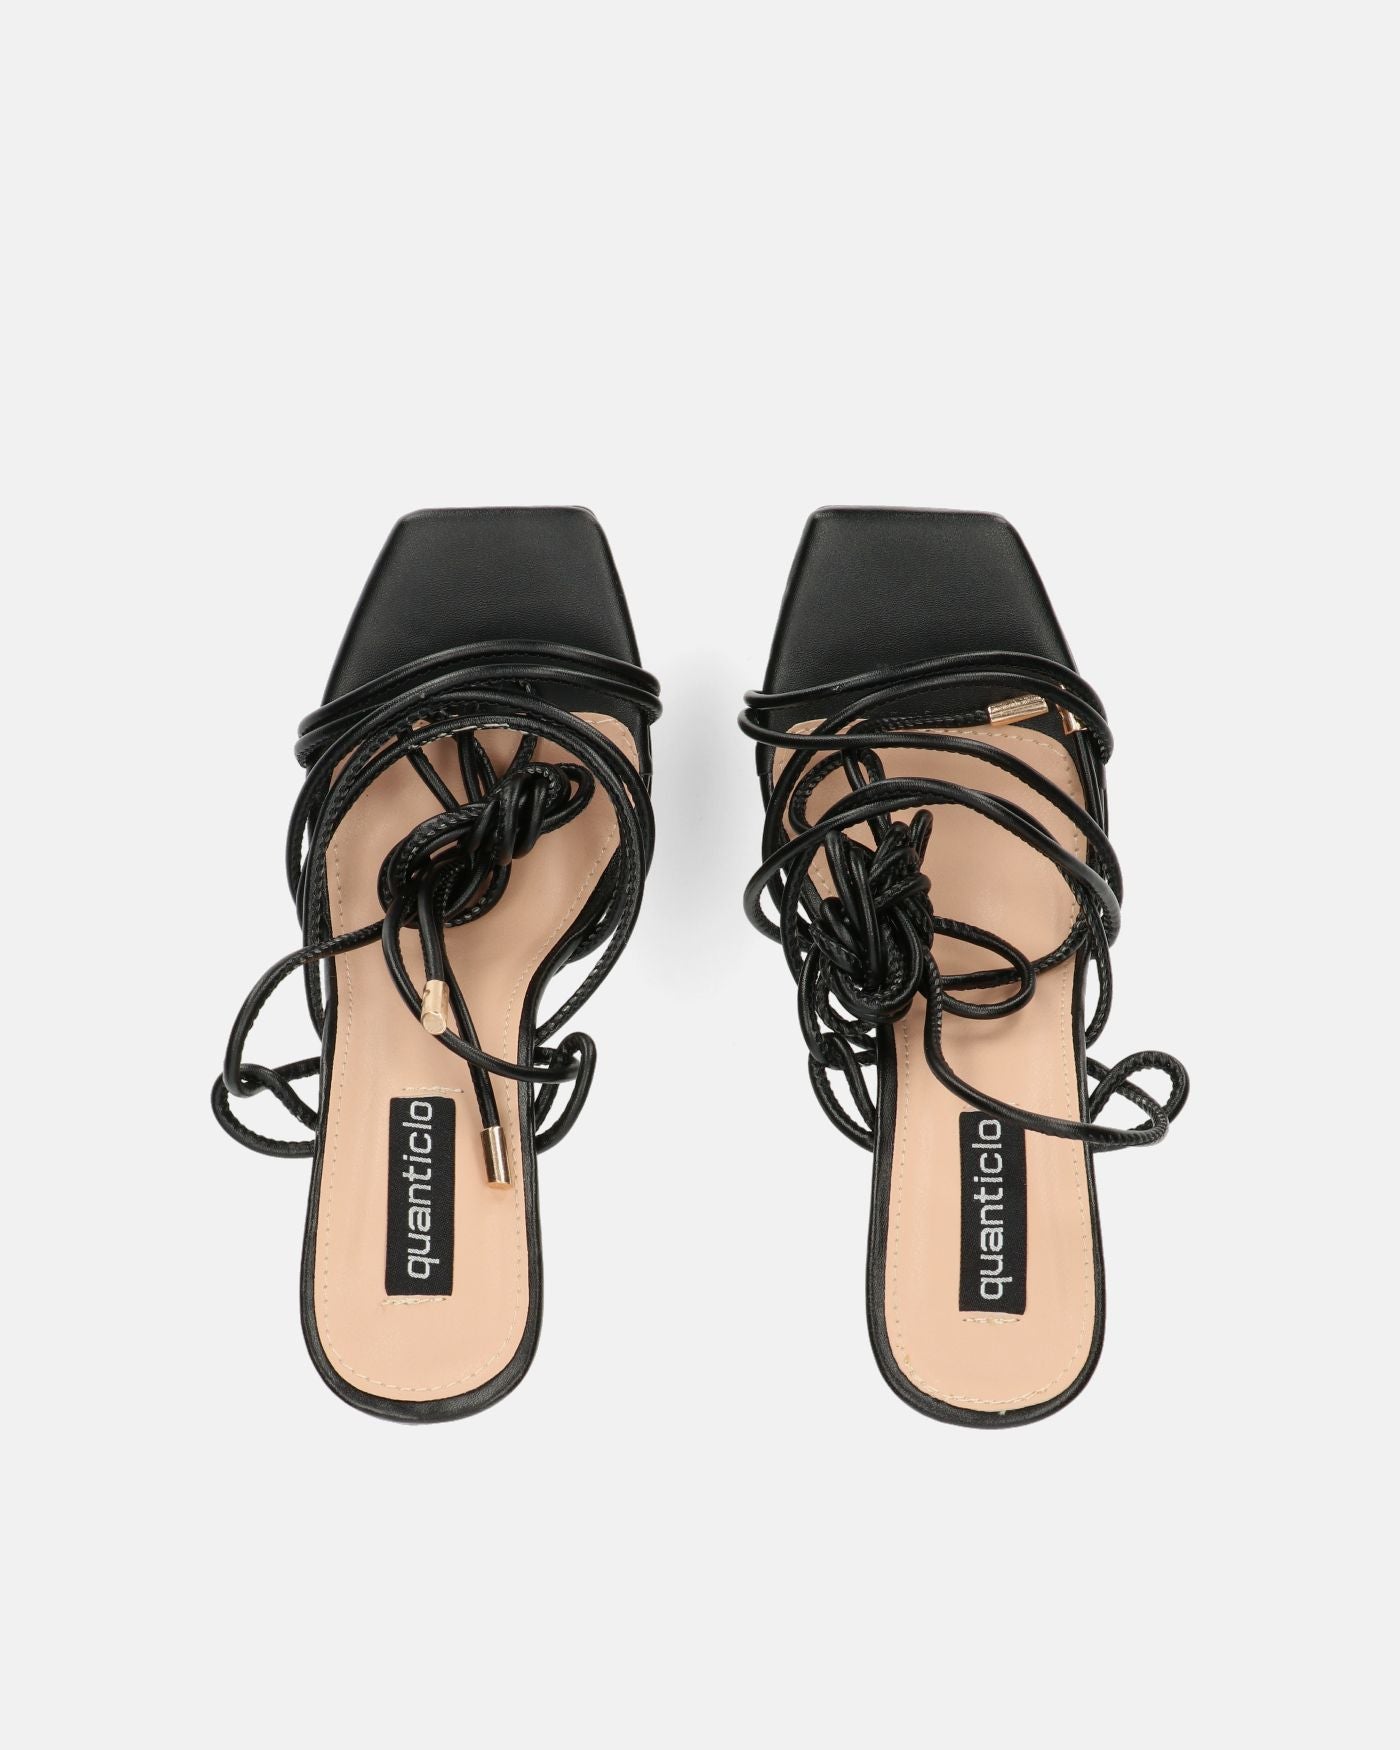 DELILA - black sandals with high heel and platform